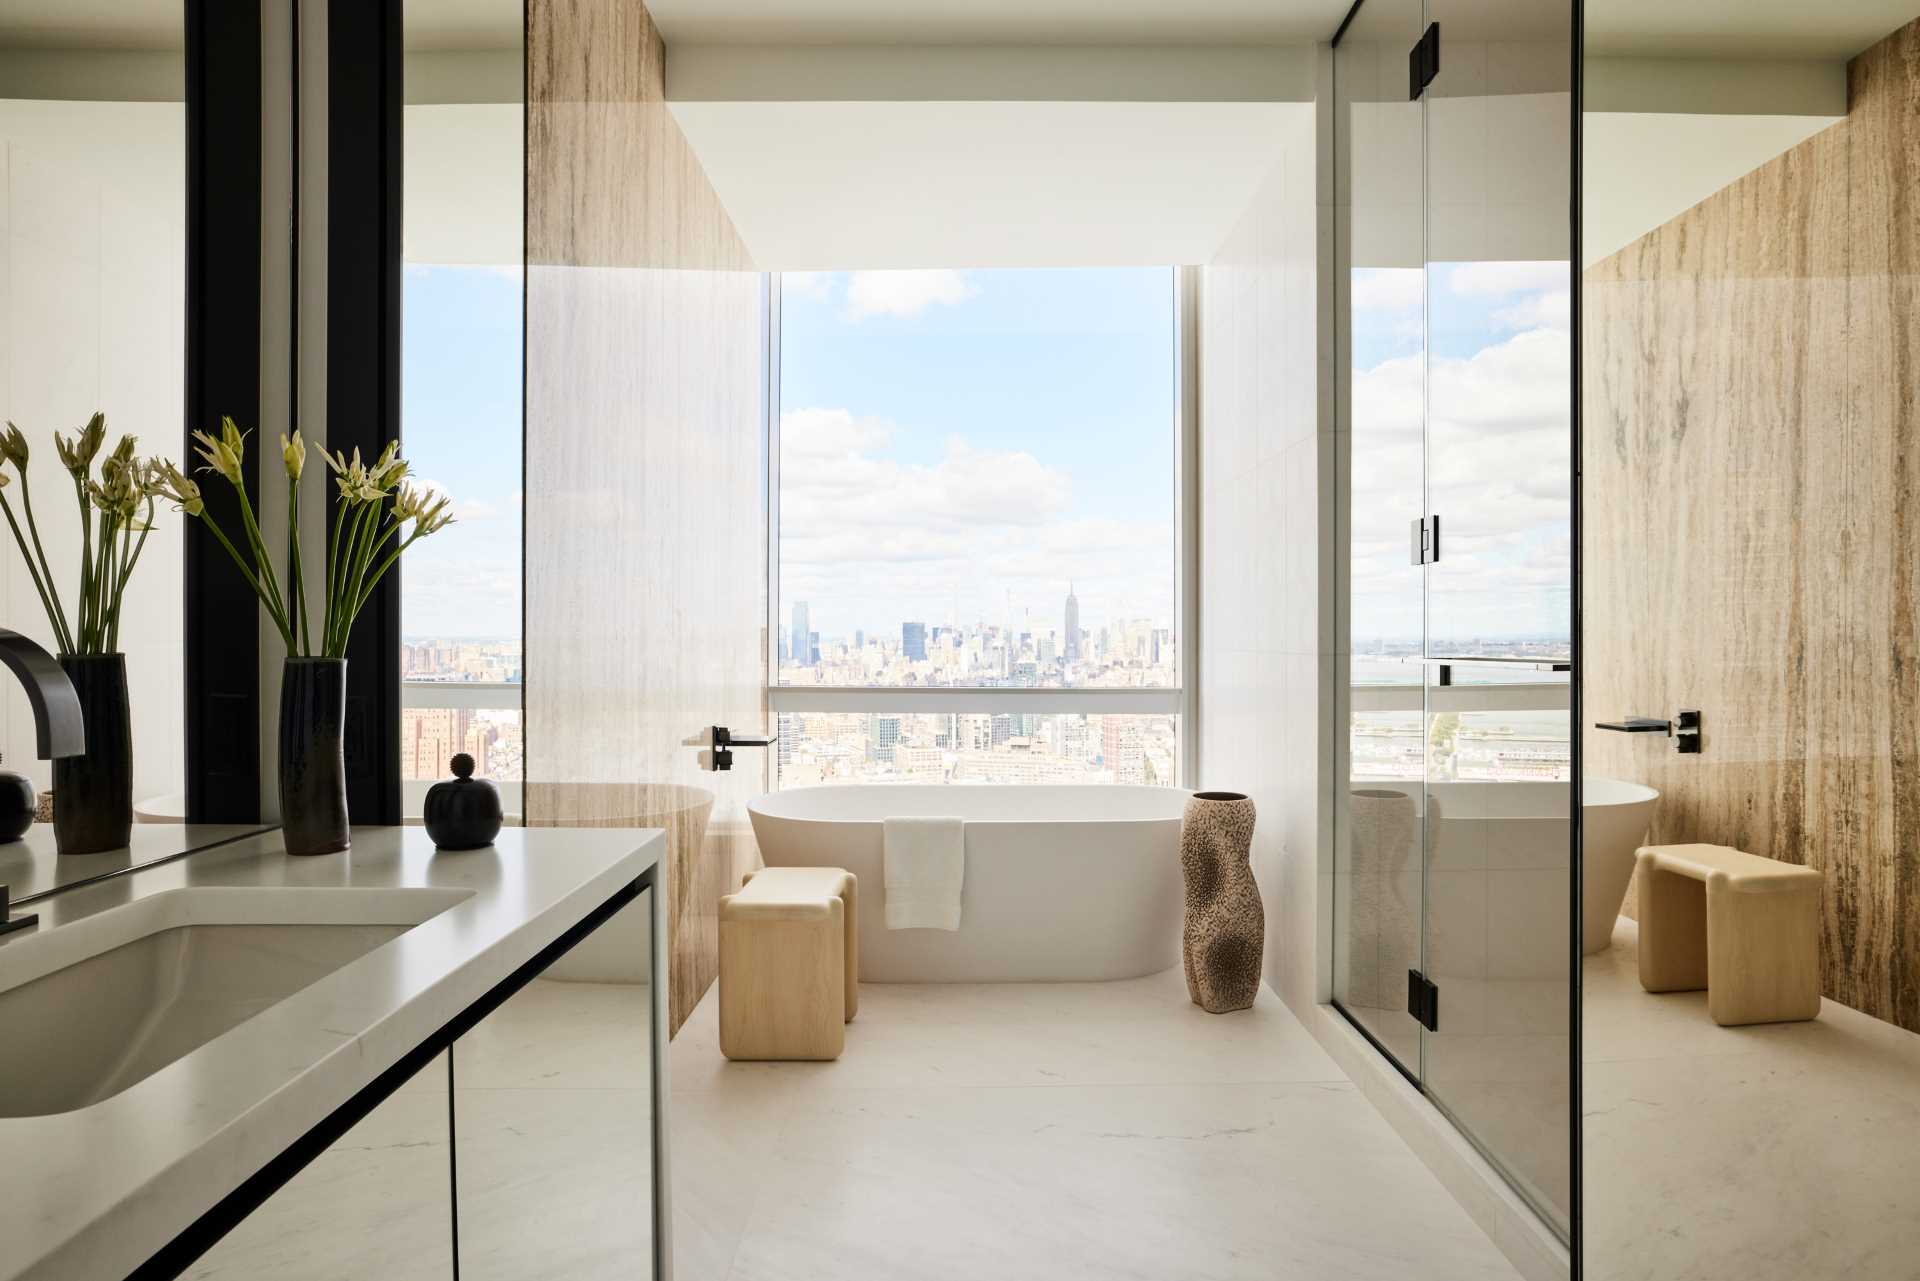 در این حمام مدرن، یک وان حمام مستقل در مقابل پنجره ای قرار گرفته است که منظره شهر را کاملاً قاب می کند.